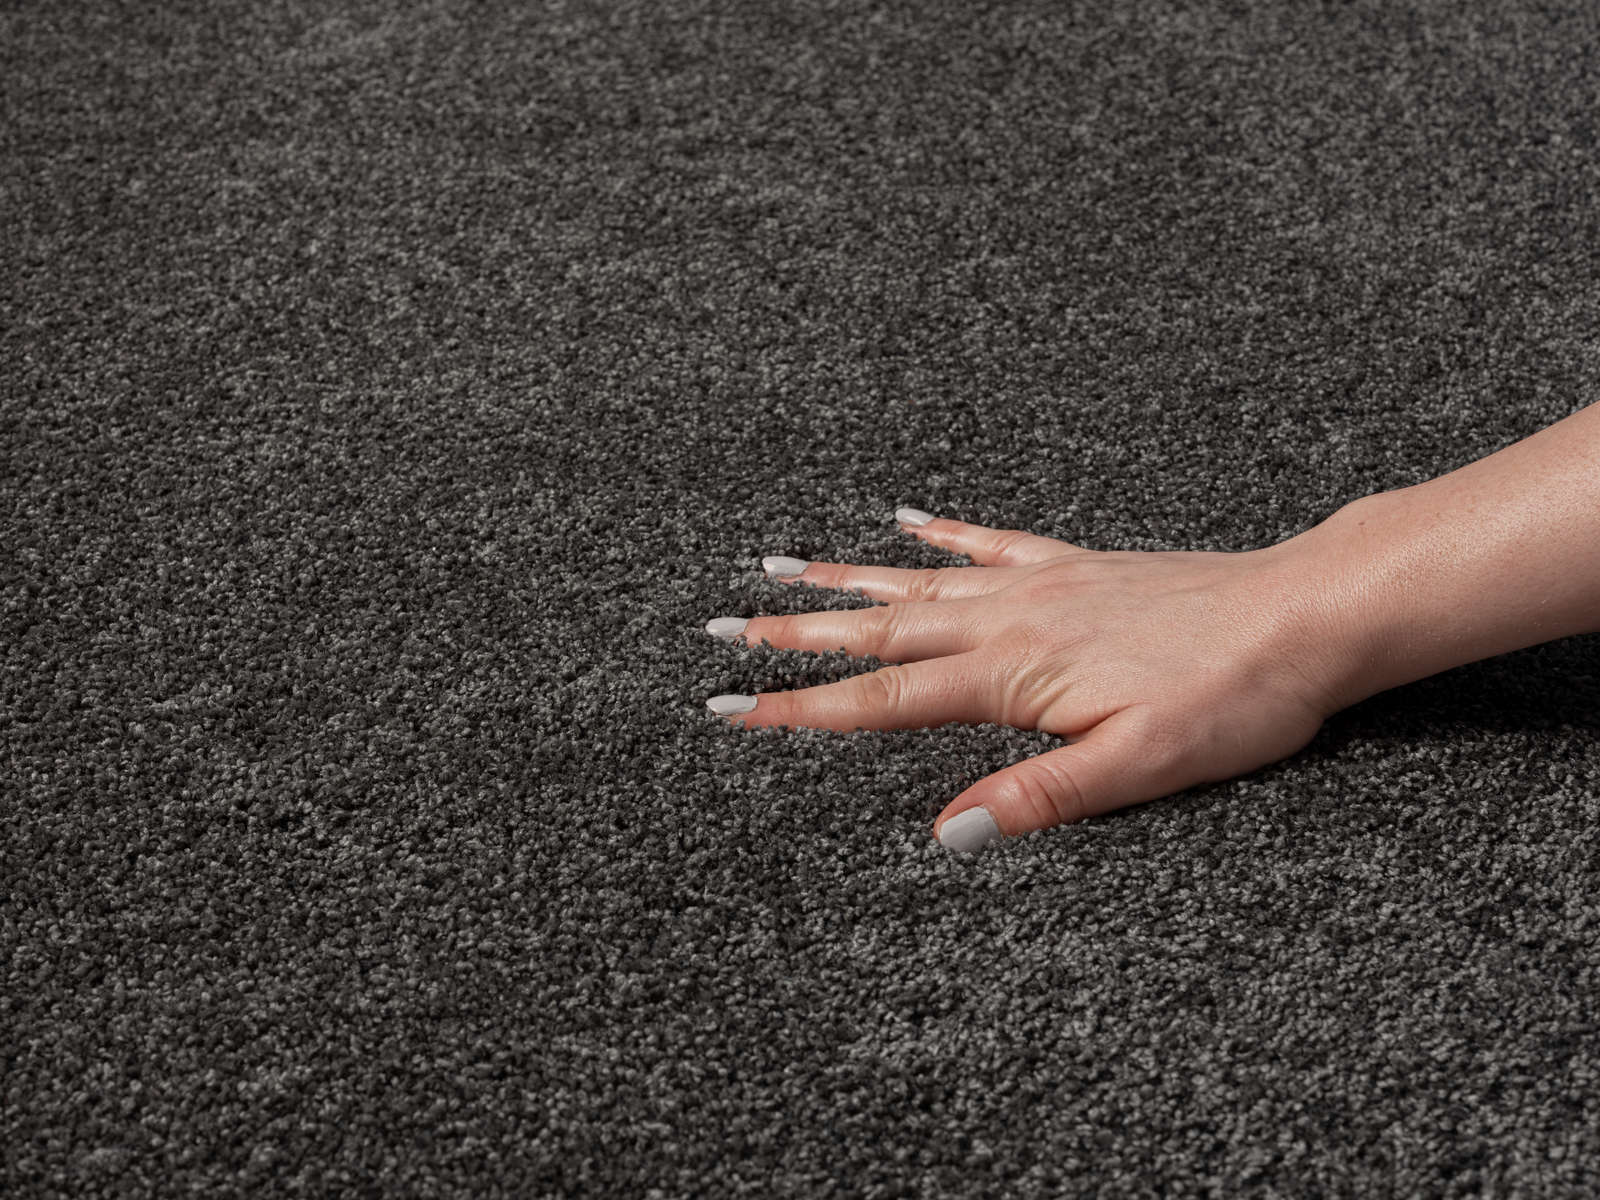             Zacht kortpolig tapijt in antraciet - 170 x 120 cm
        